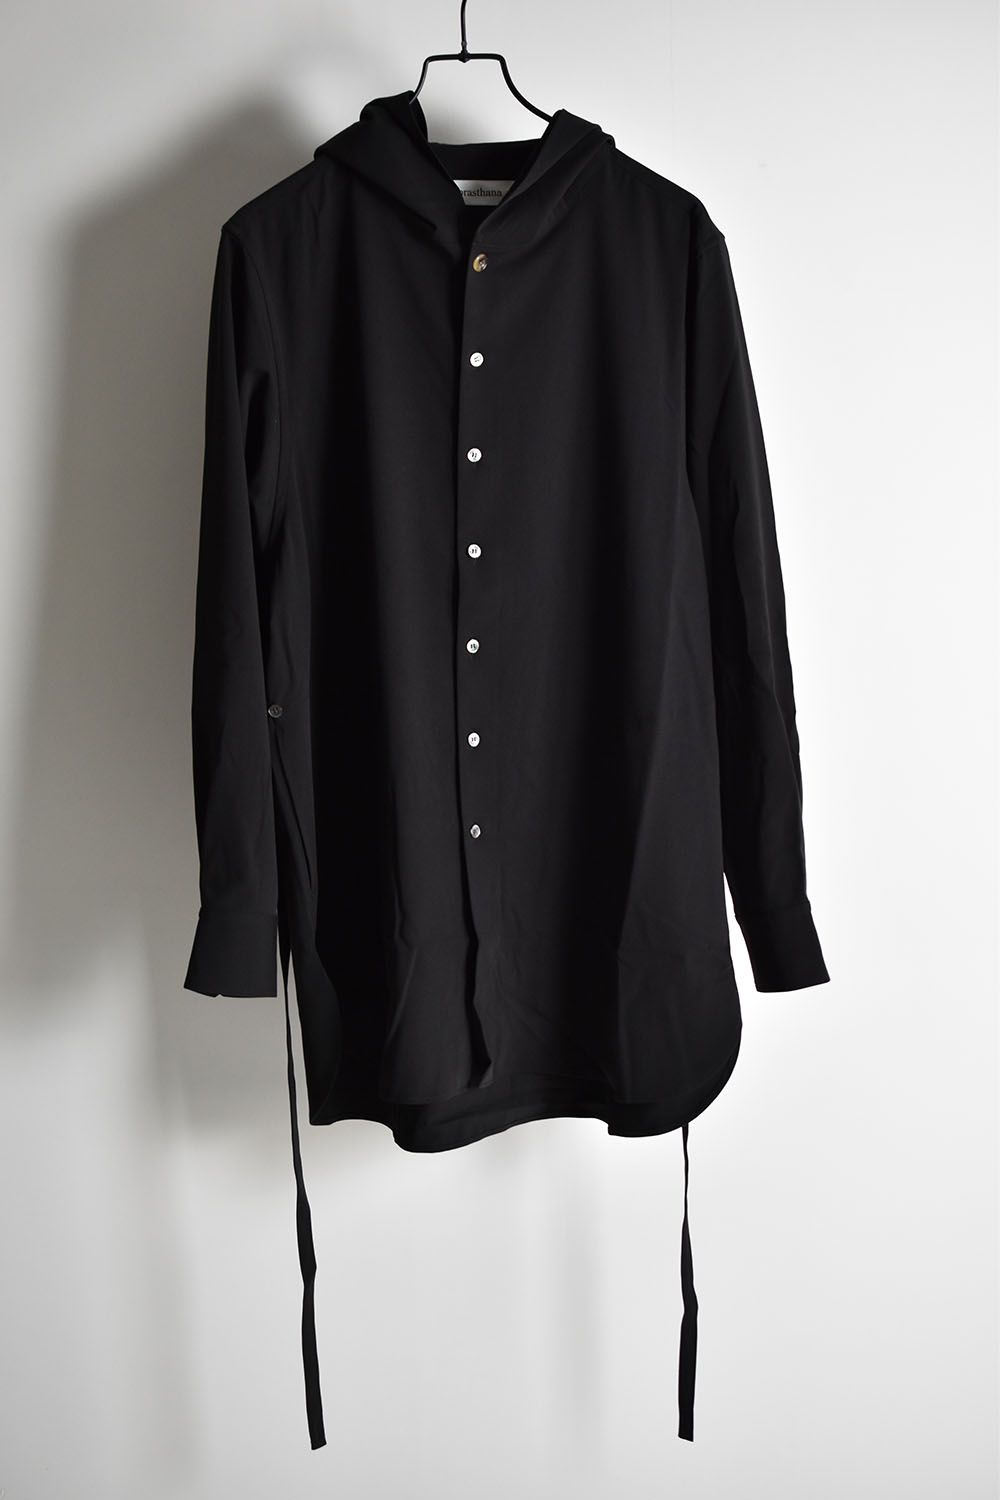 Strings Hooded Shirt"Black"/ストリングフーデットシャツ"ブラック"